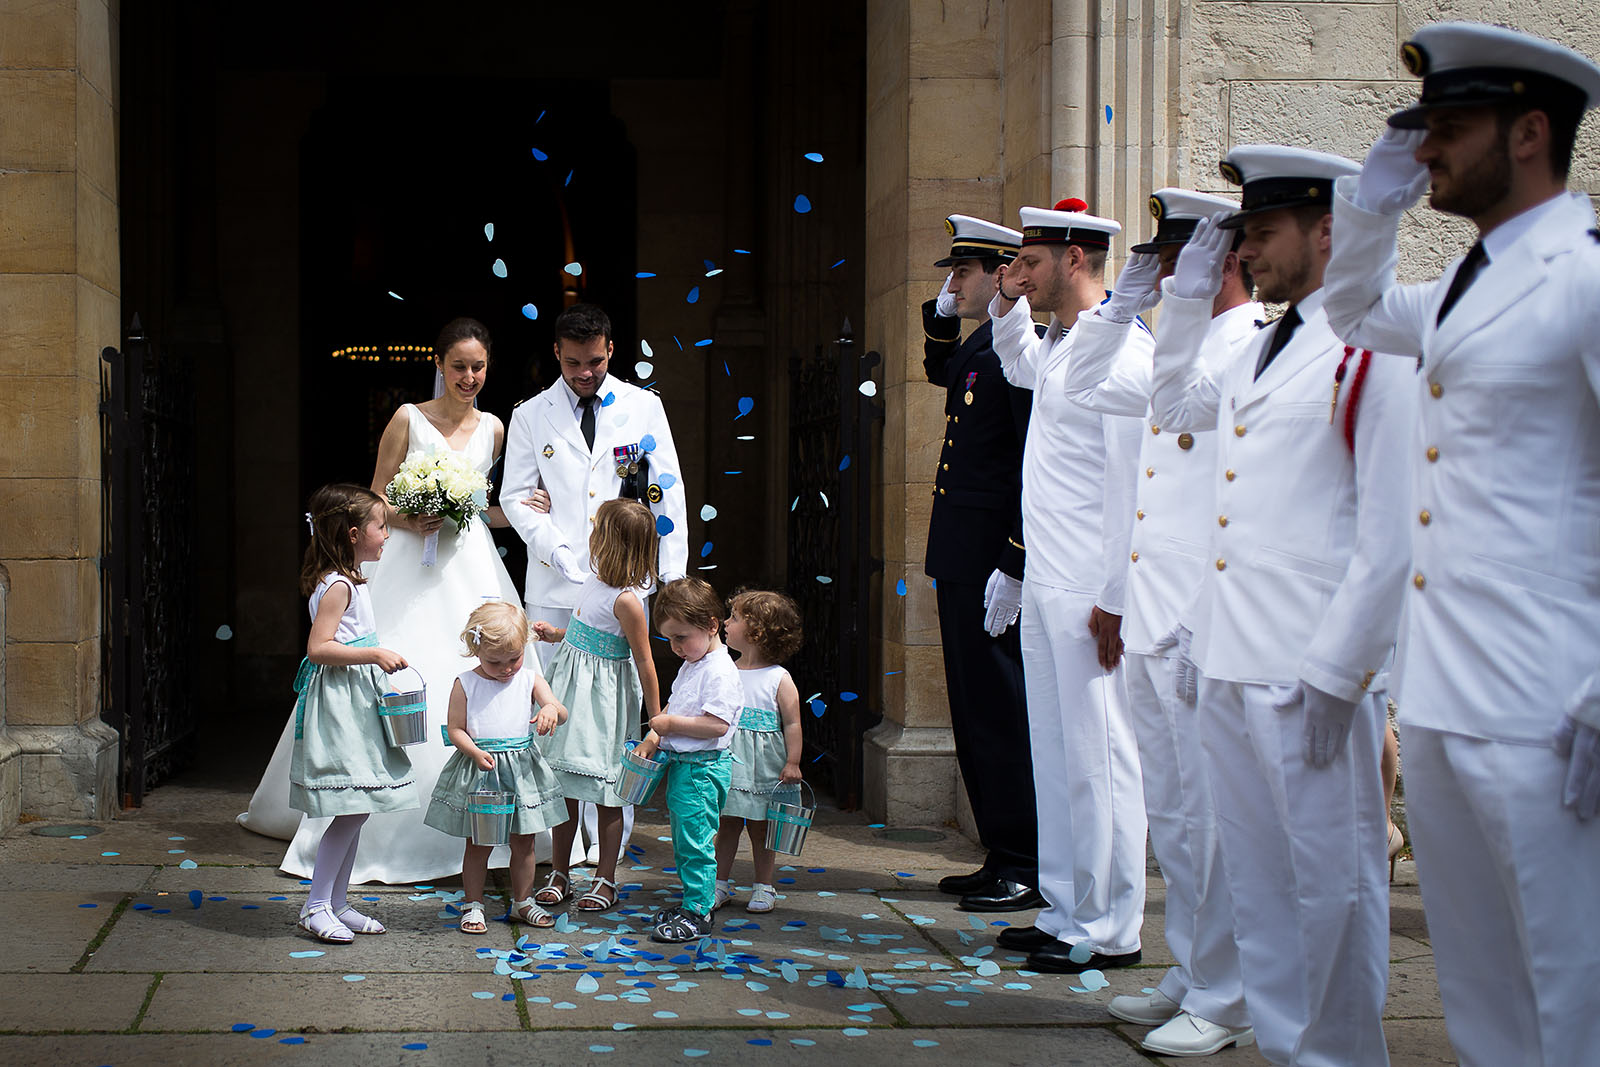 Photographe de mariage à Lyon. Sortie de l'église avec salut militaire et marins